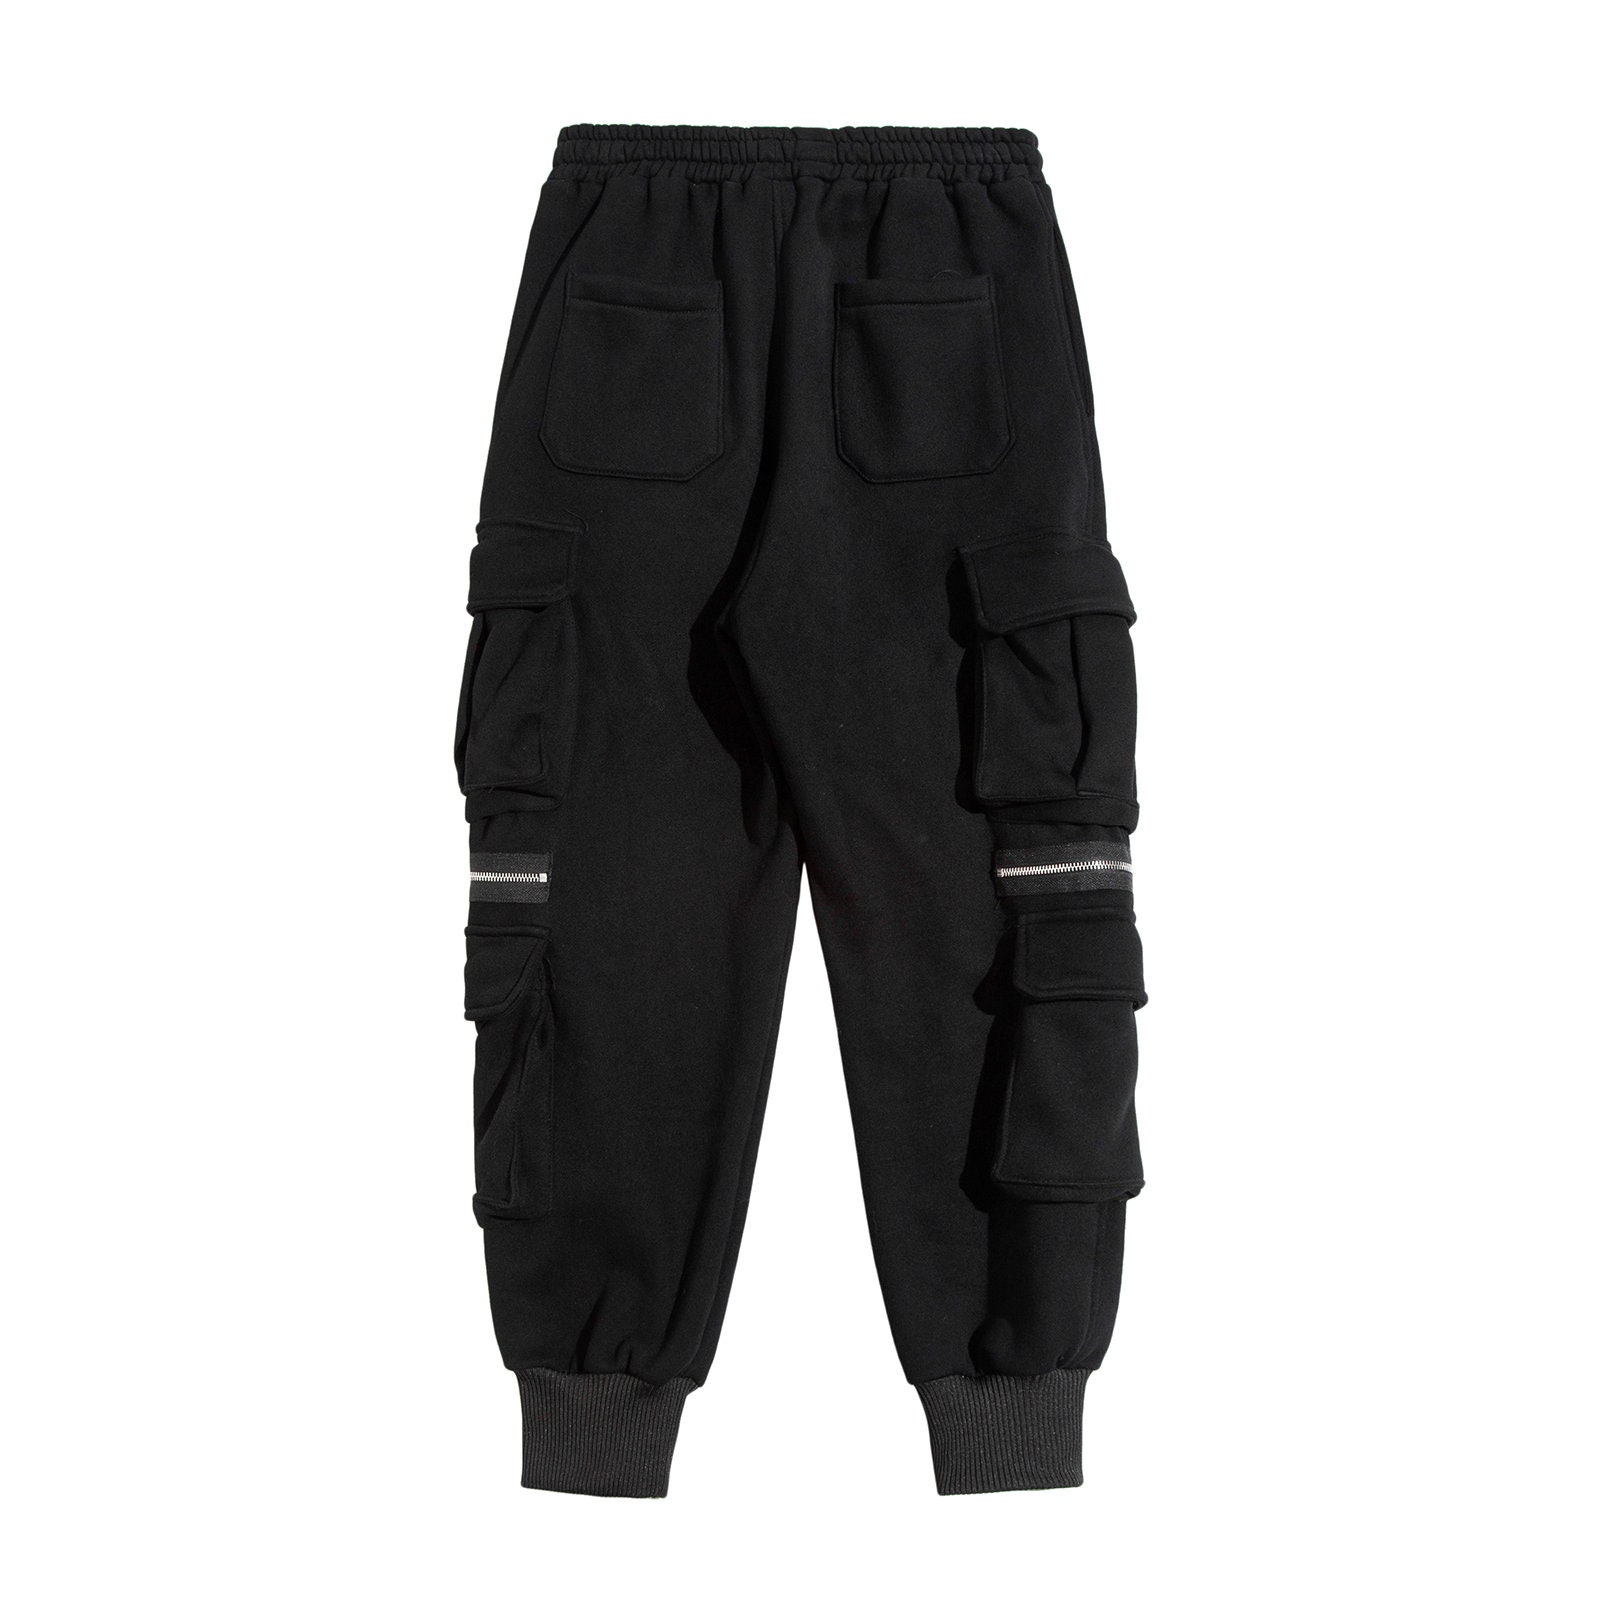 Men's Black Sweatpants Techwear Streetwear Joggers Pants | Etsy